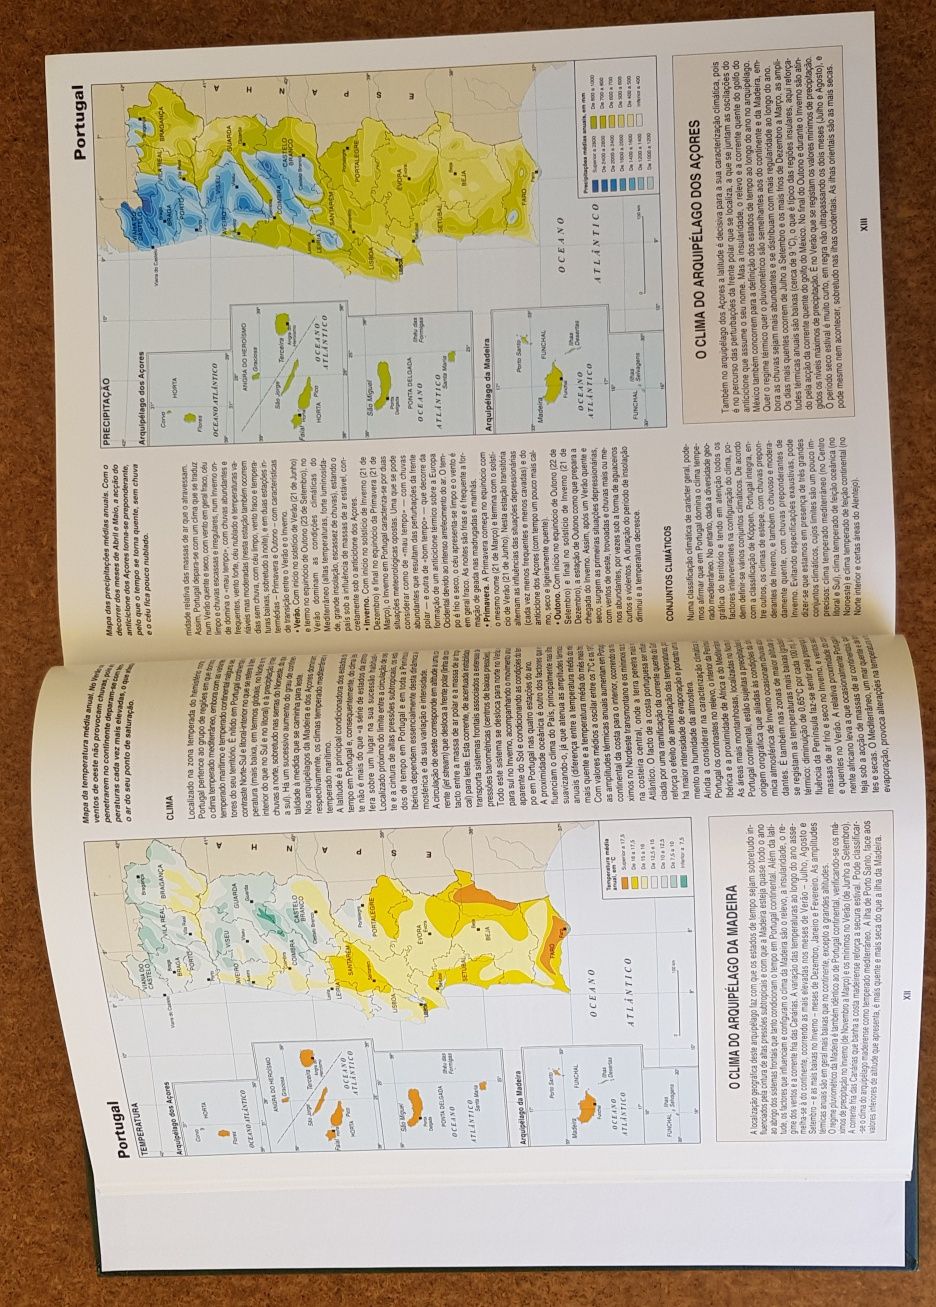 Atlas Mundial da Sabatina publicado pela Marina Editores